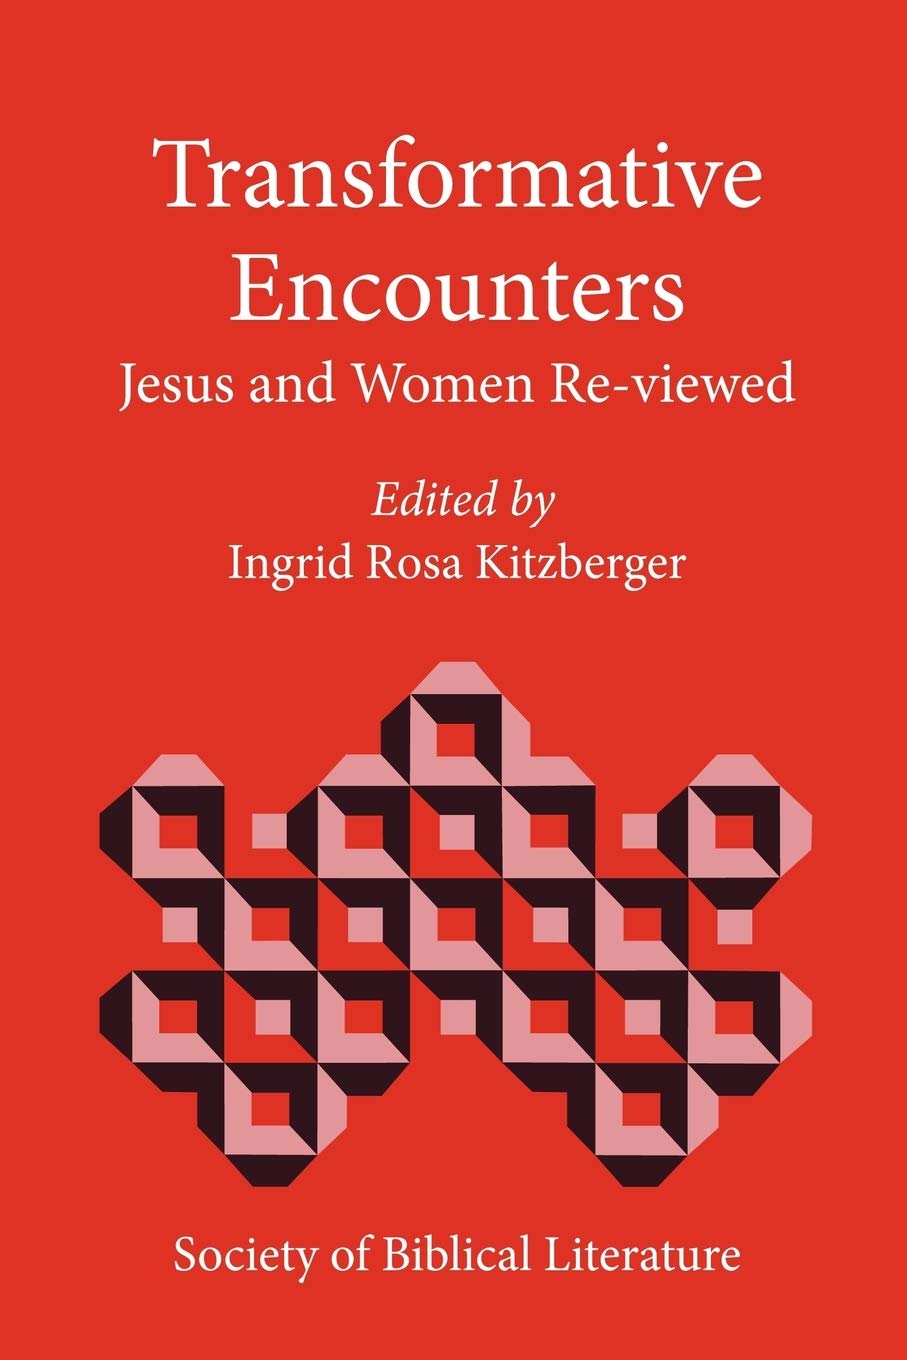 Imagen de portada del libro Transformative encounters